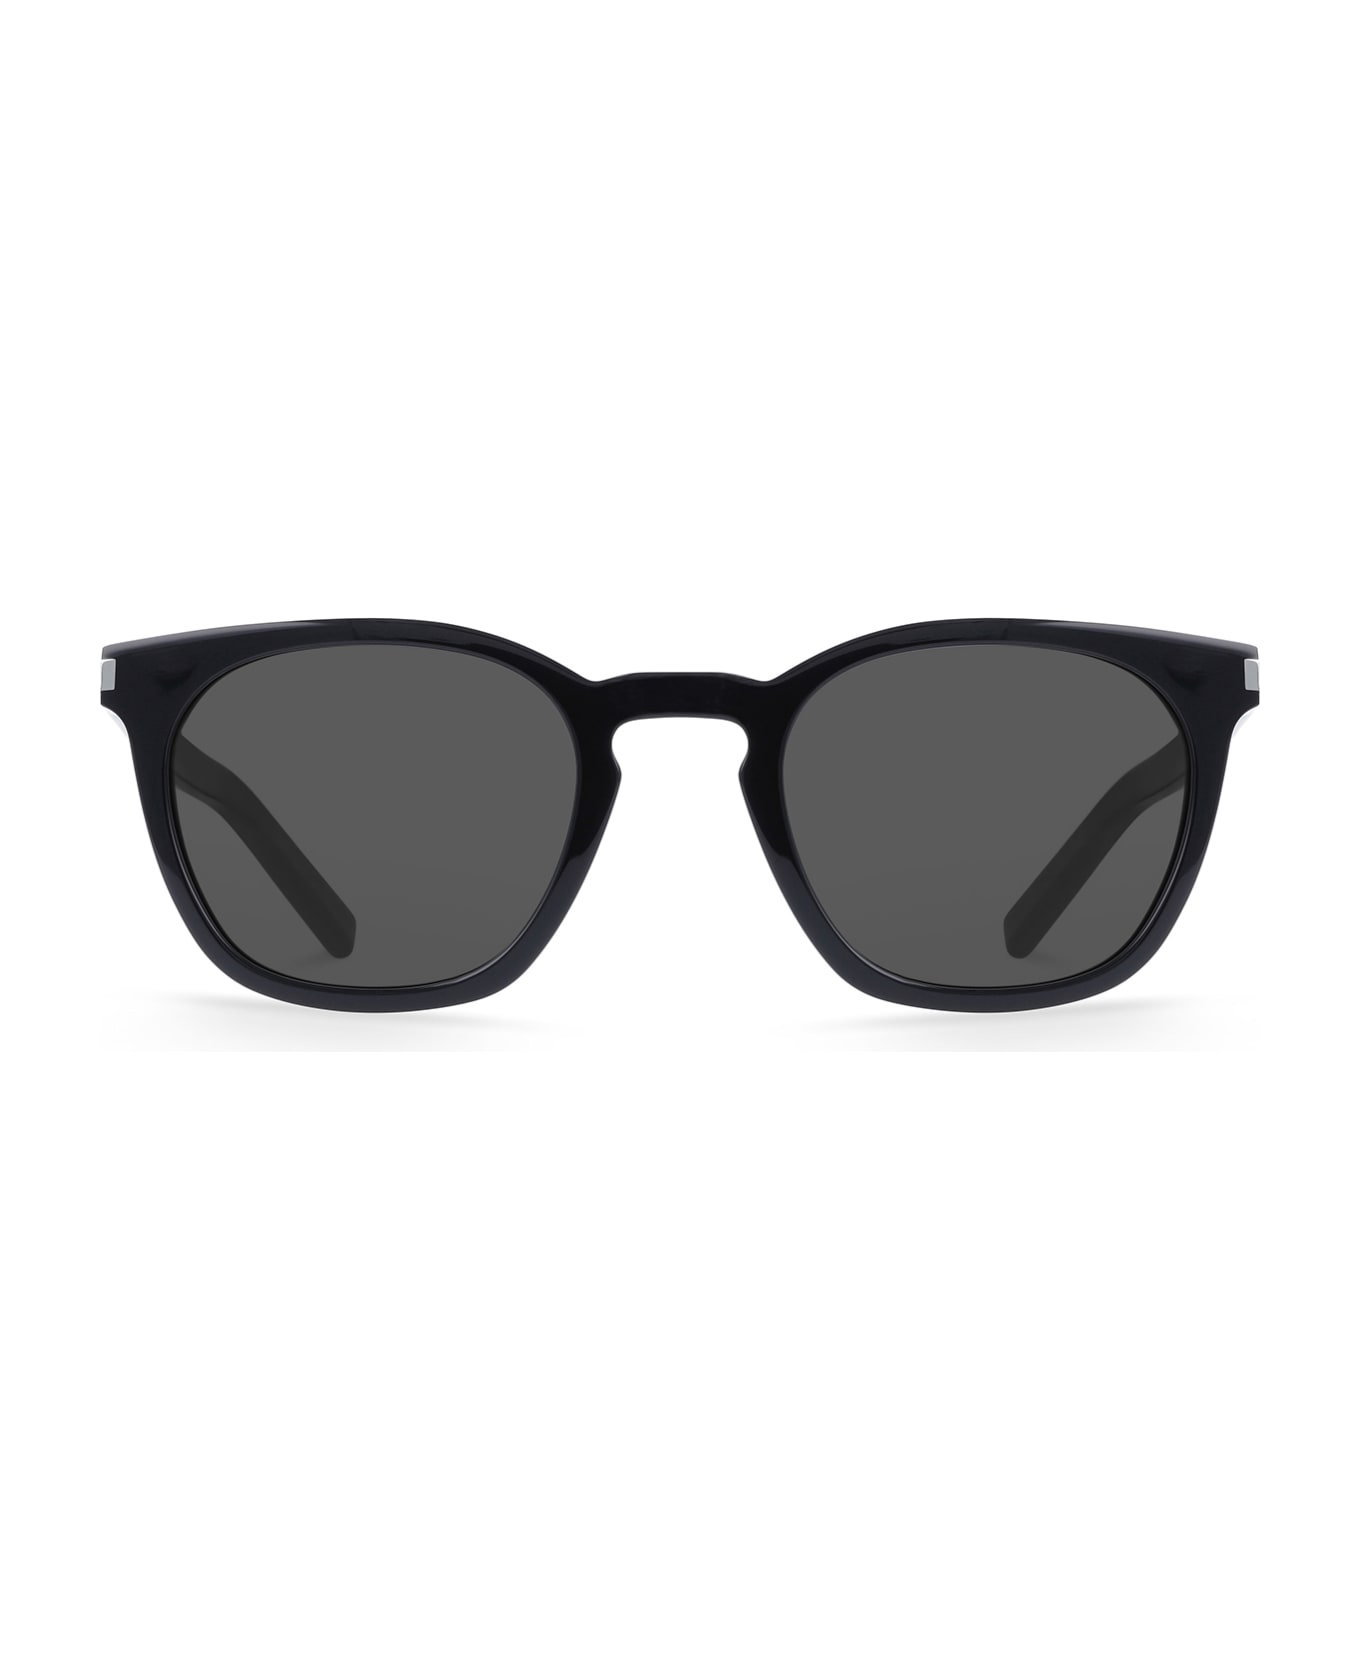 Saint Laurent Eyewear Sl 28 Black Sunglasses - Black